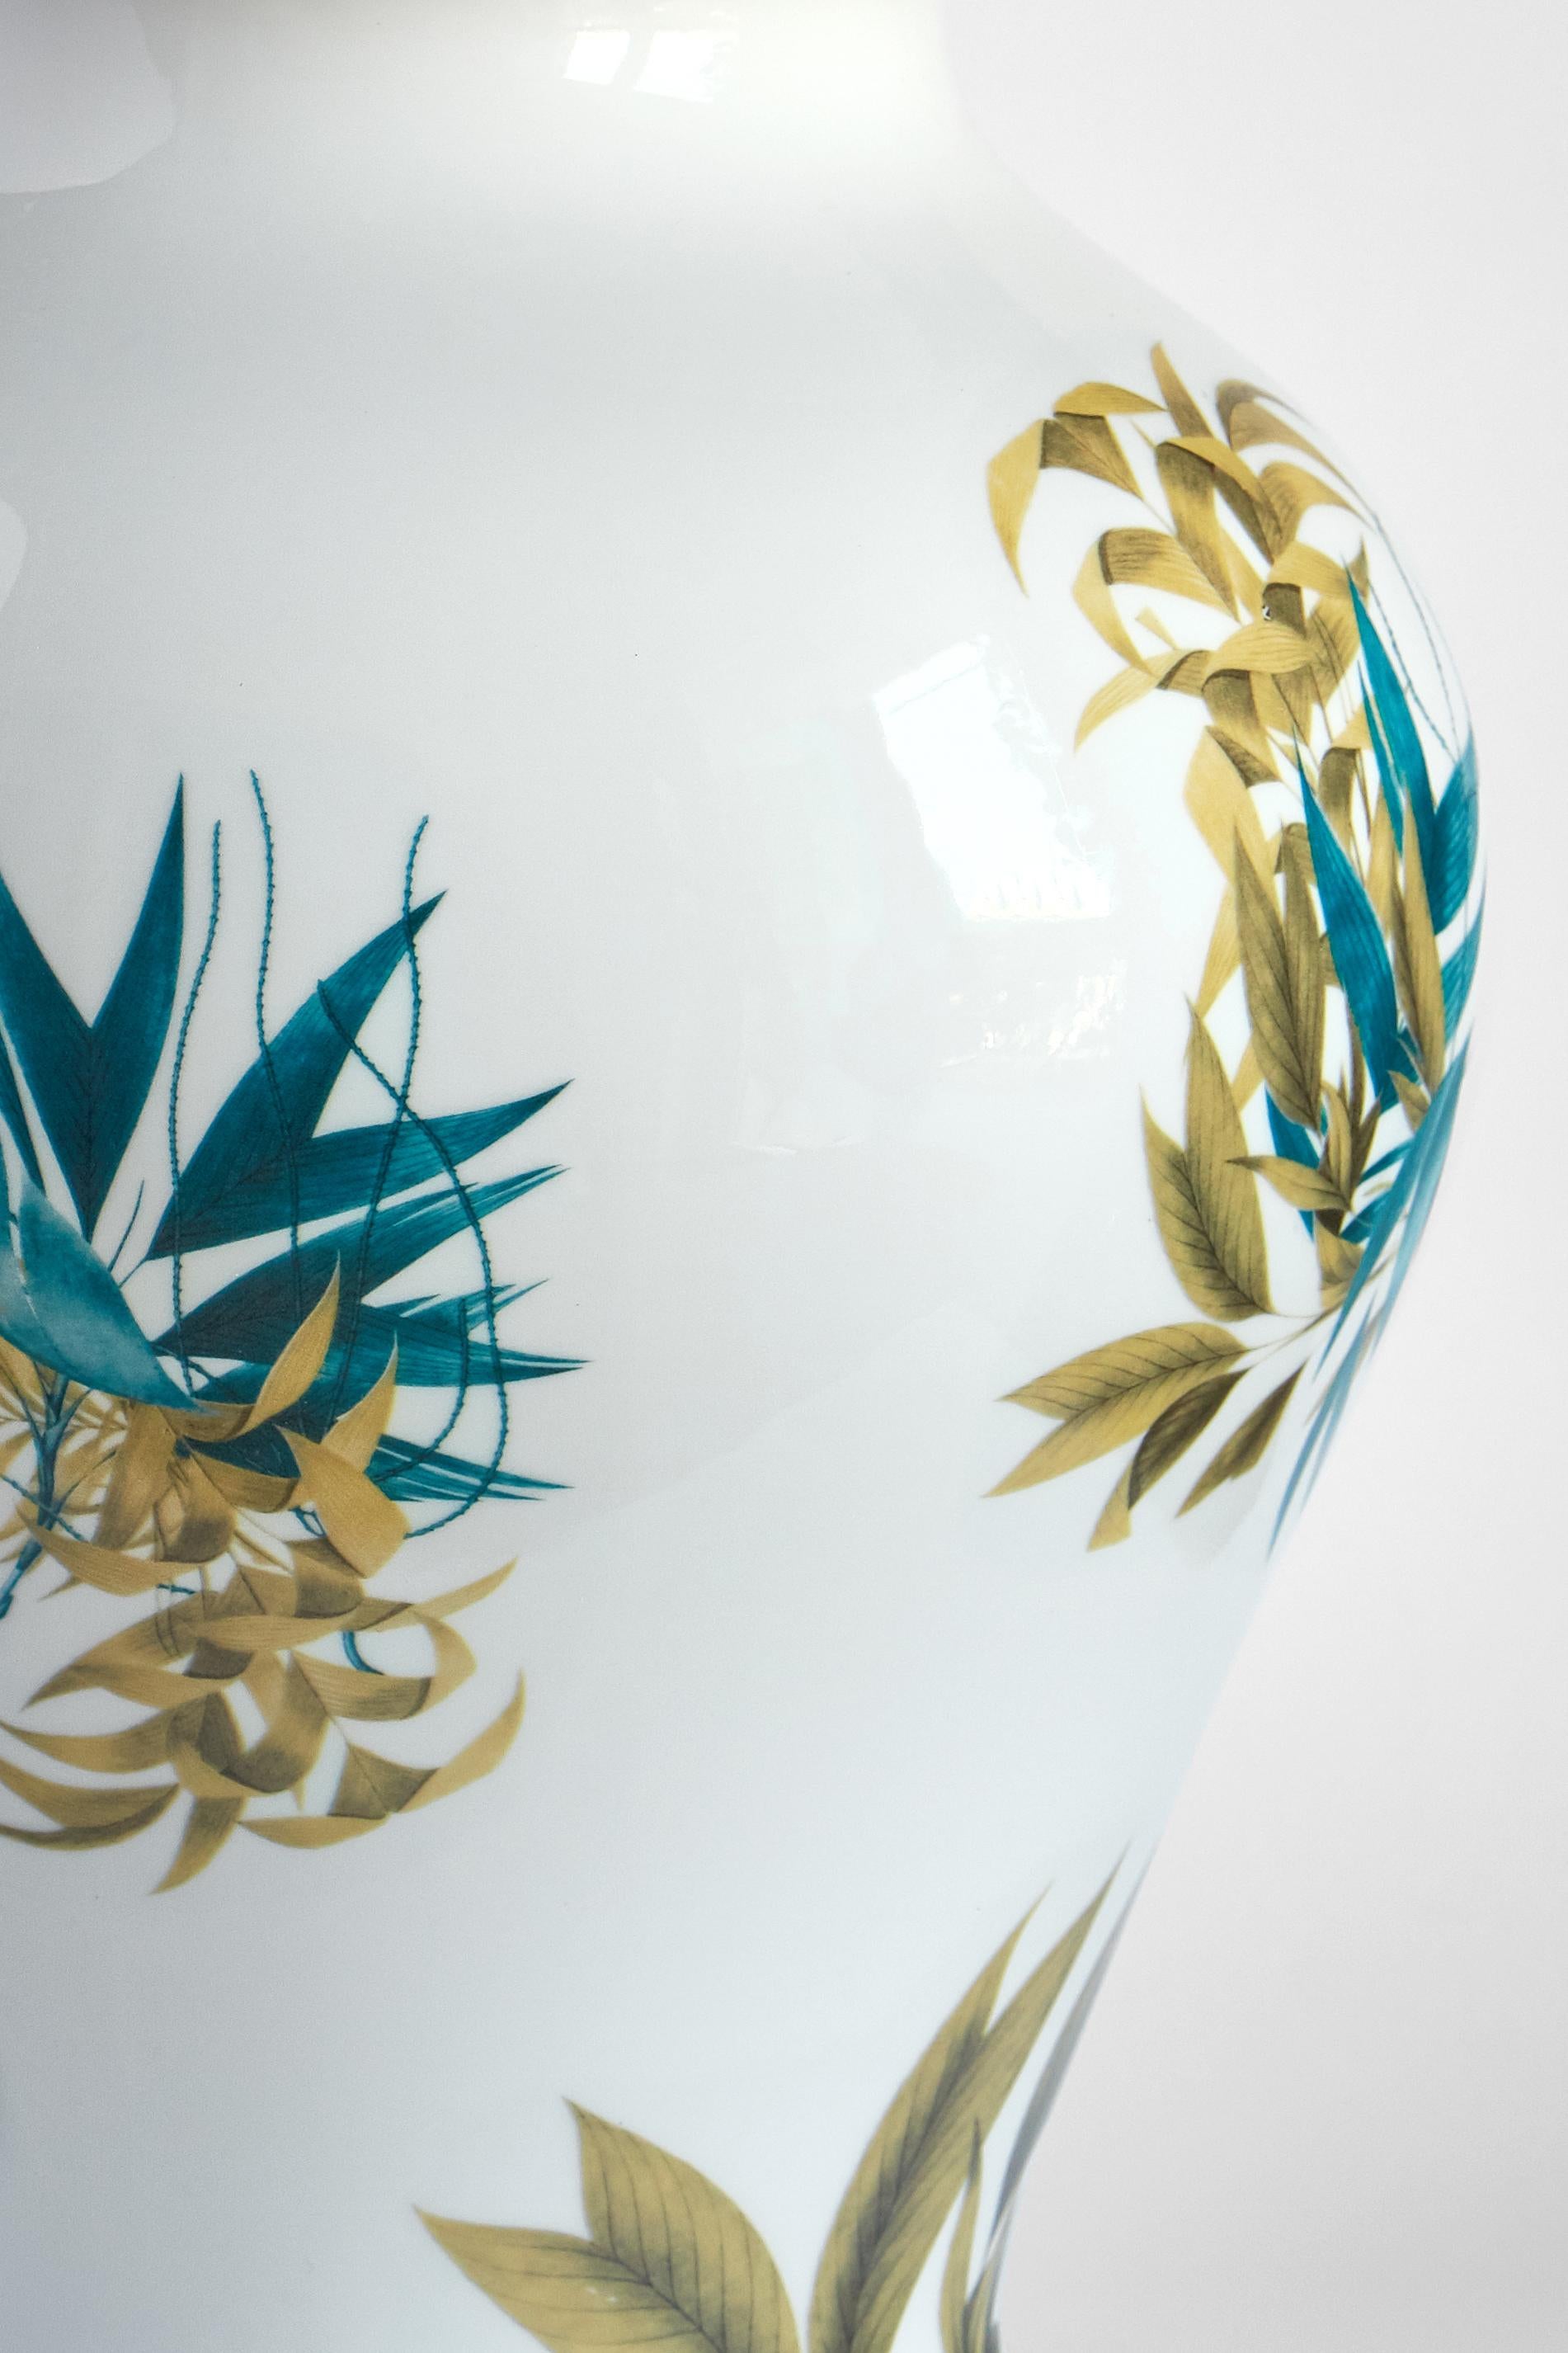 Das klassische Design dieser Porzellanvase wird durch Retro-Dekorationen mit zeitgenössischer Note wieder zum Leben erweckt. Teal und ockerfarbene Palmenblätter breiten sich auf der Oberfläche dieser kostbaren Vase aus.